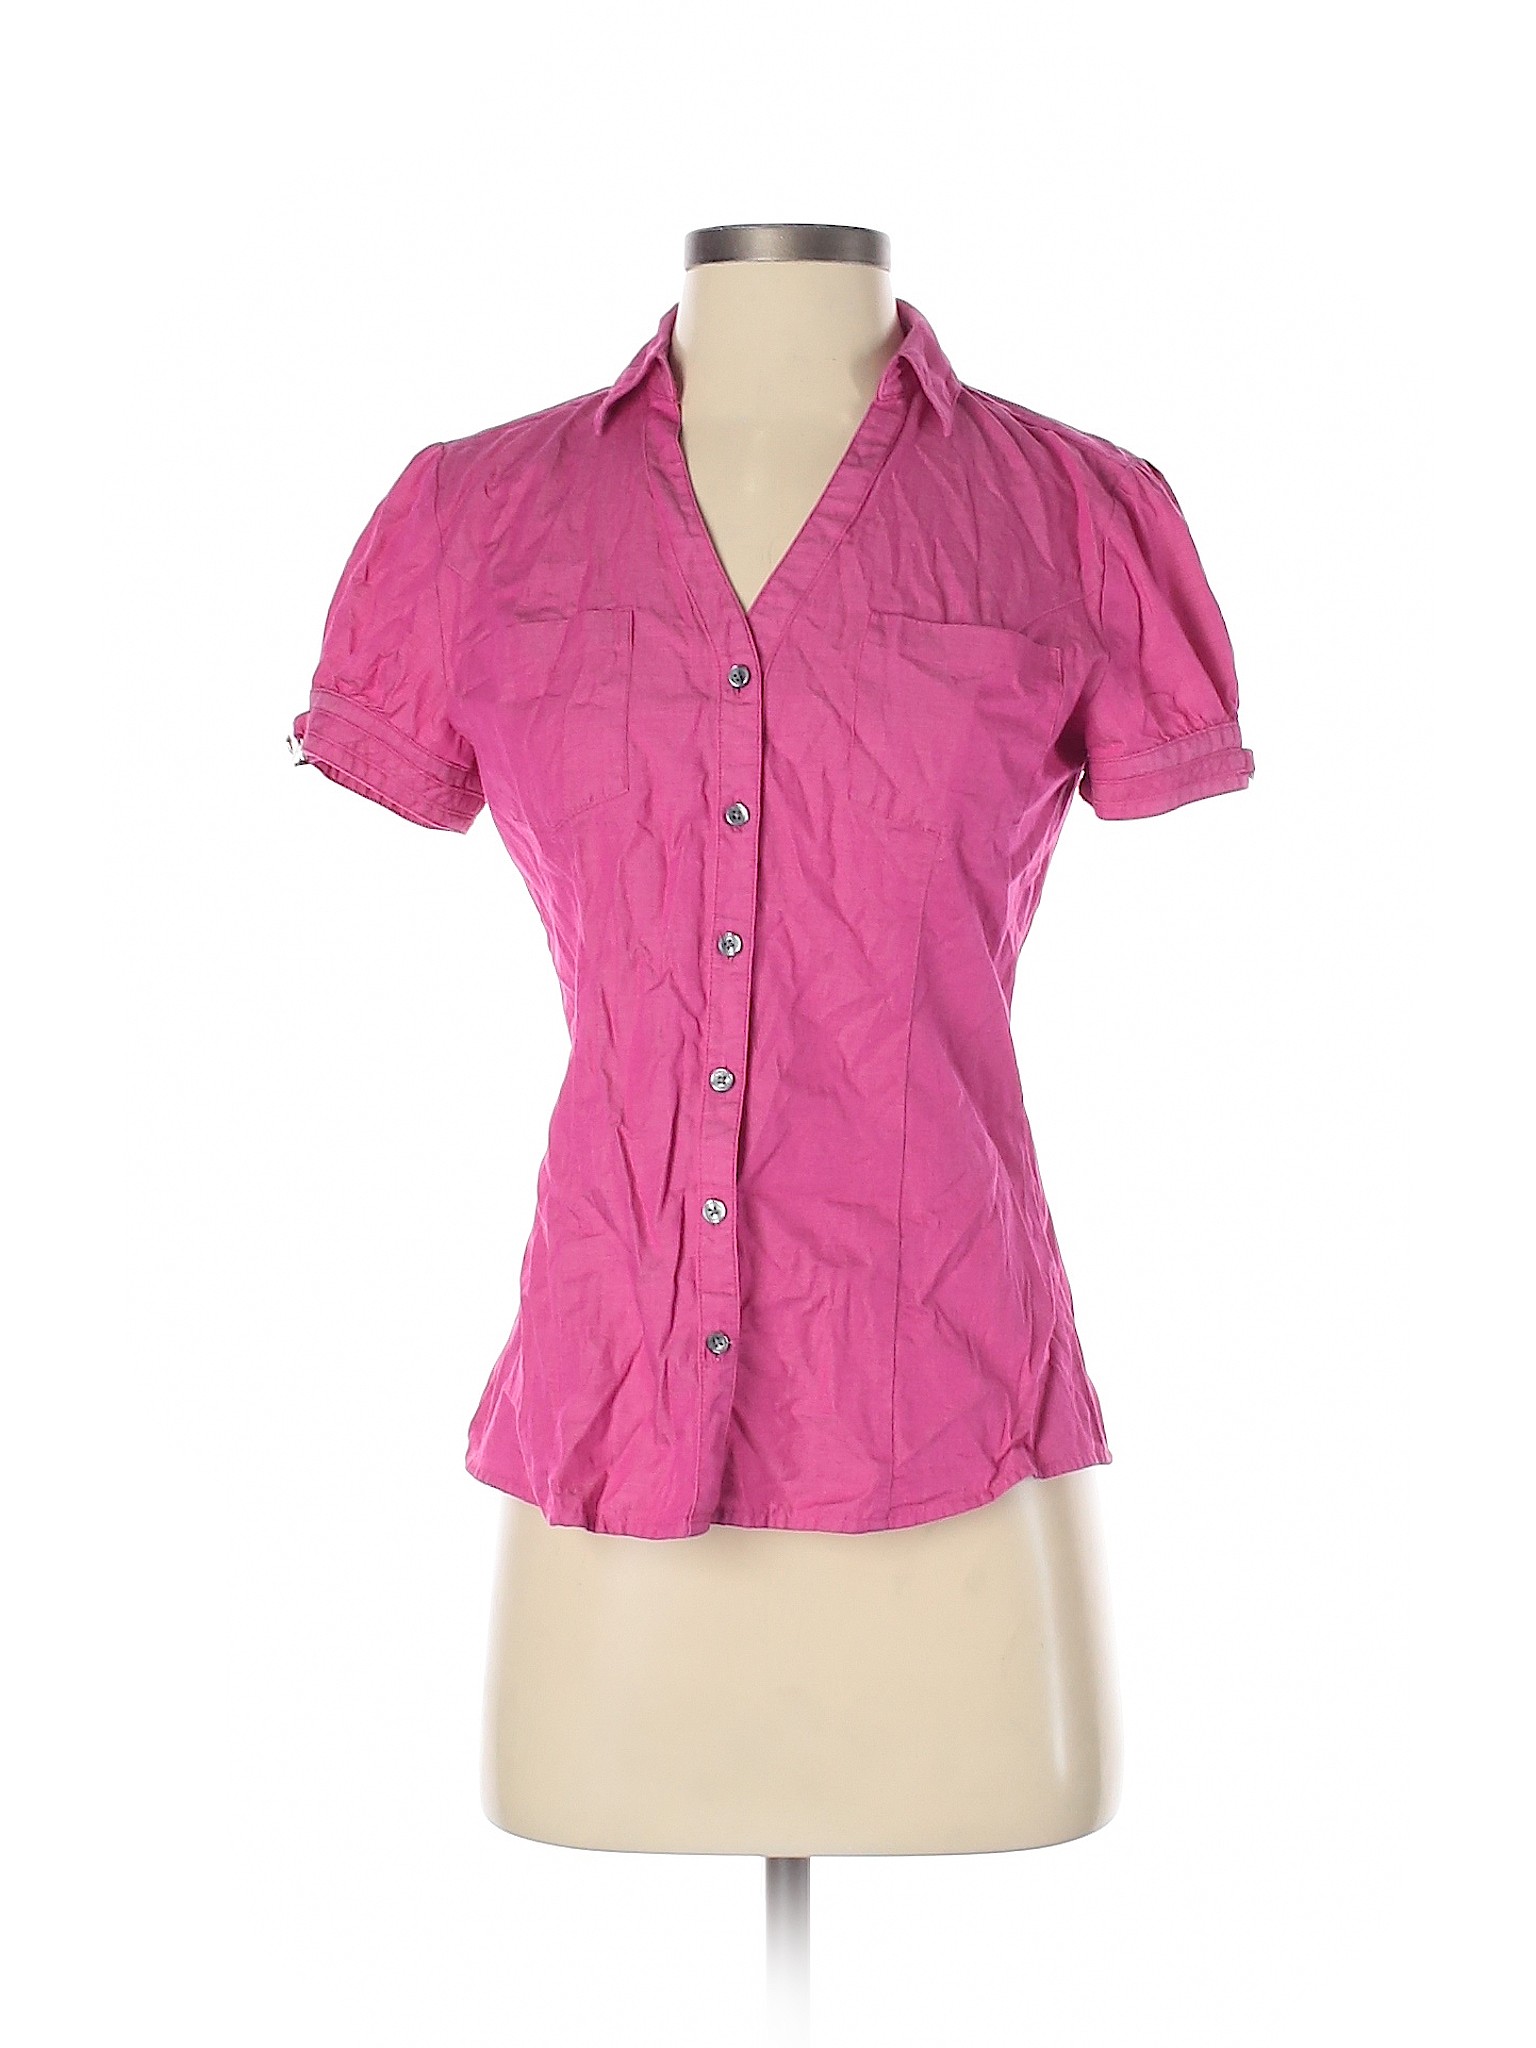 Express Women Pink Short Sleeve Button-Down Shirt S | eBay